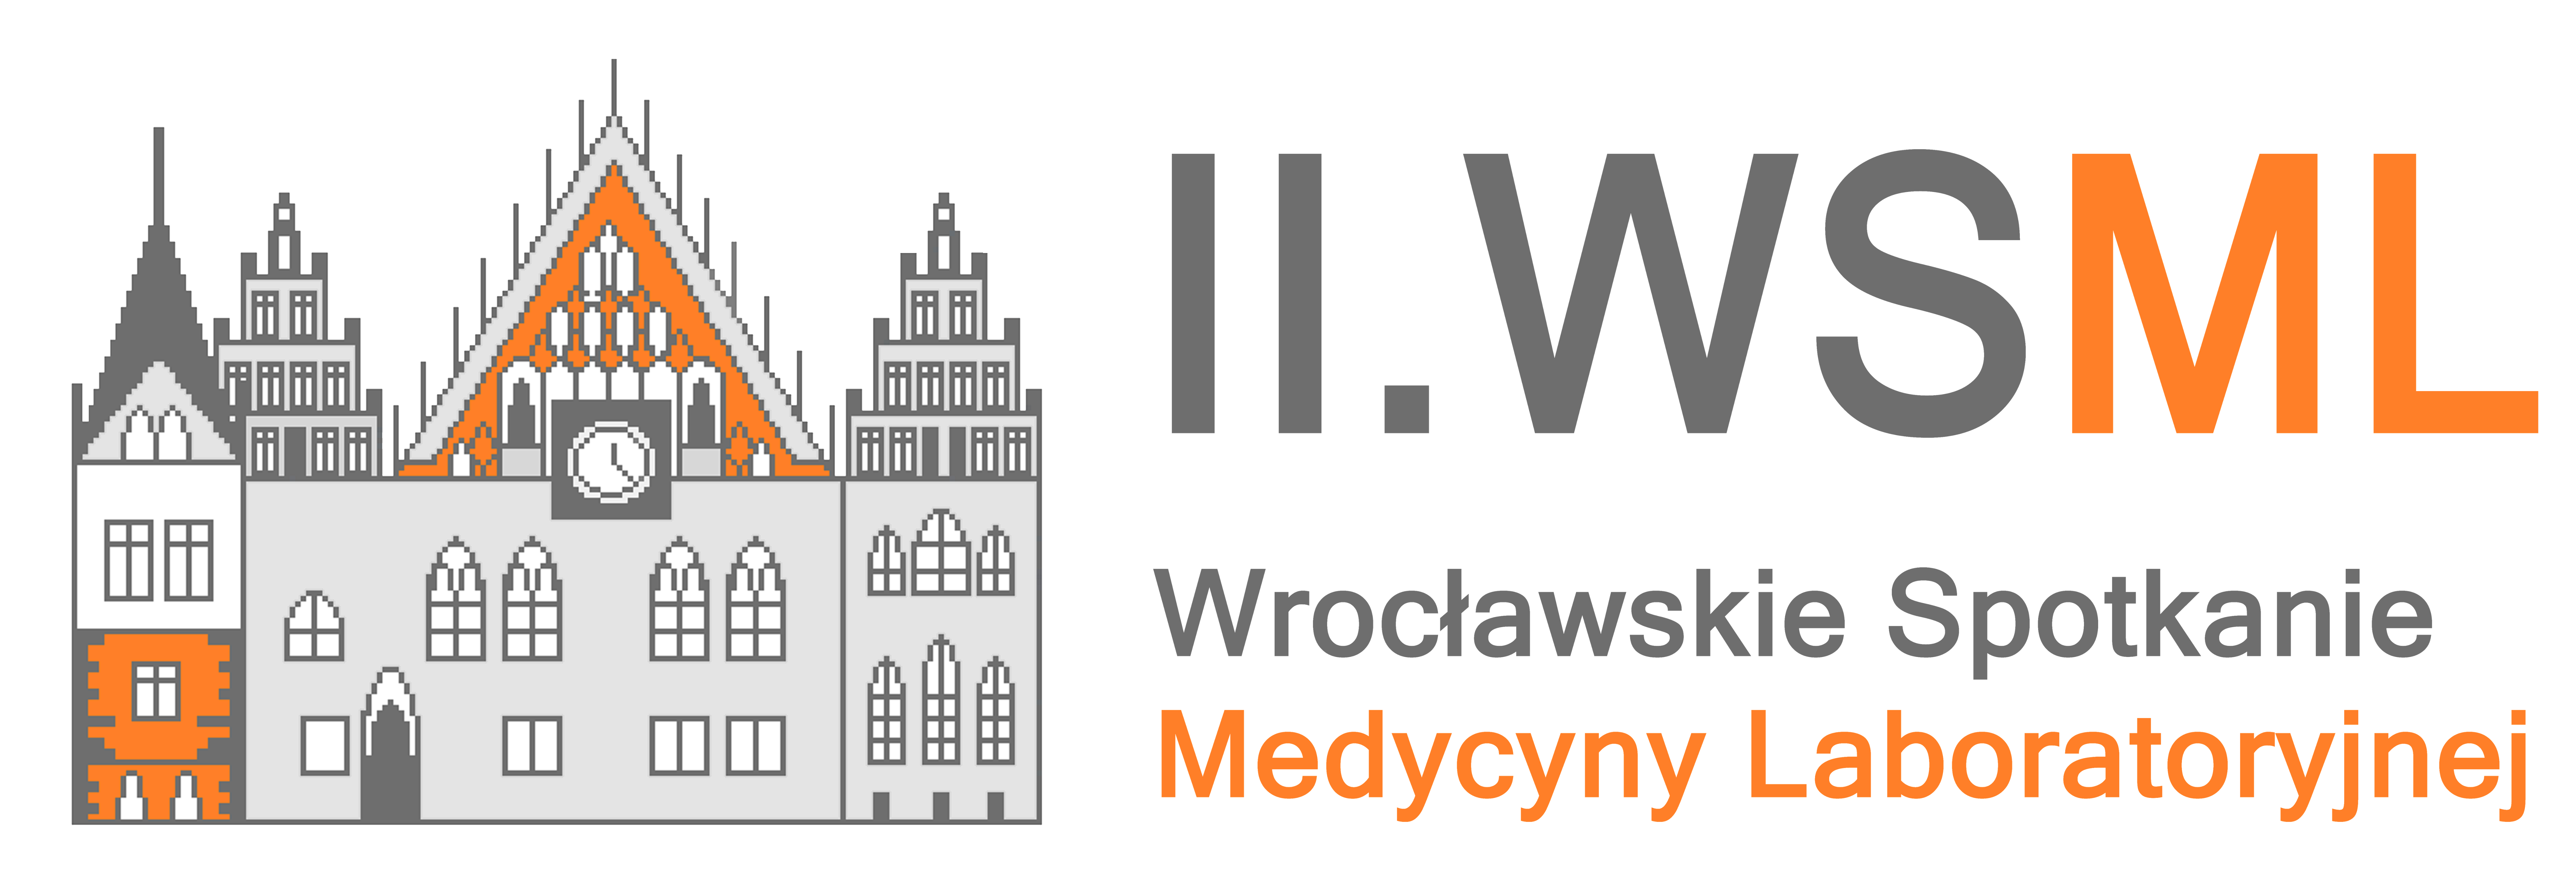 WSML logo